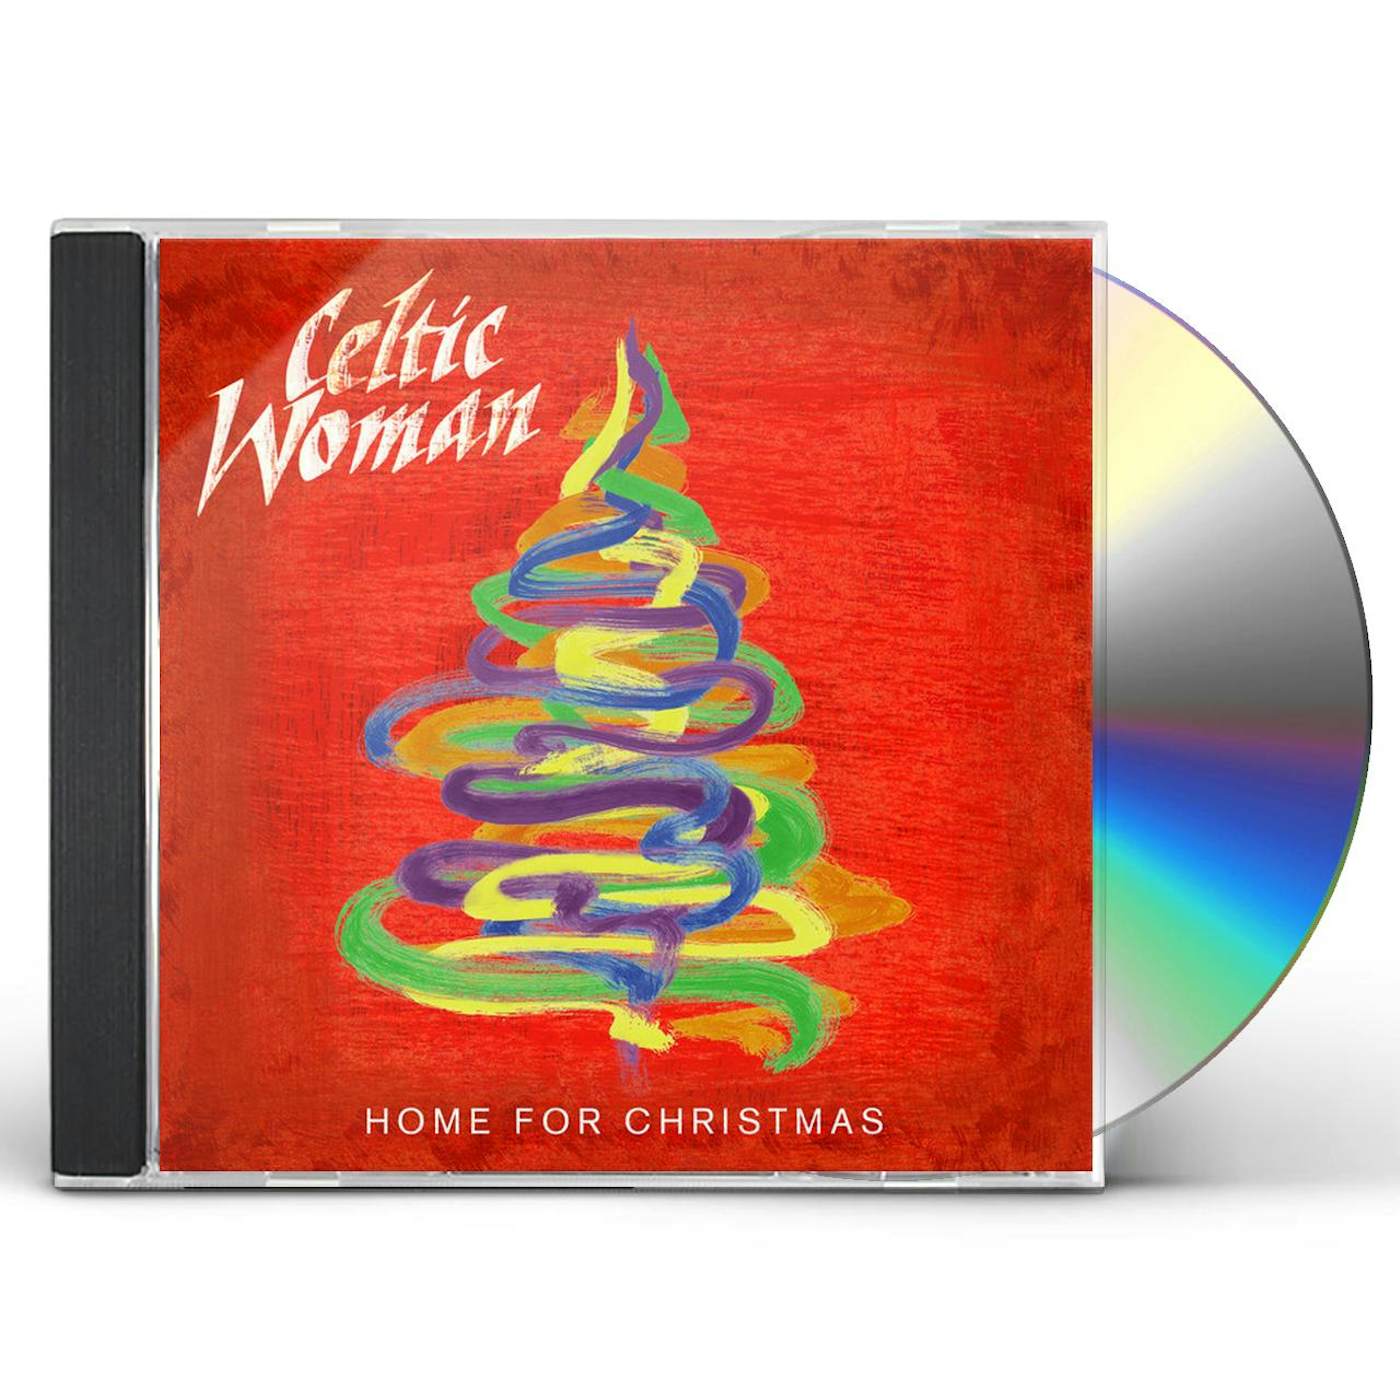 Celtic Woman HOME FOR CHRISTMAS CD